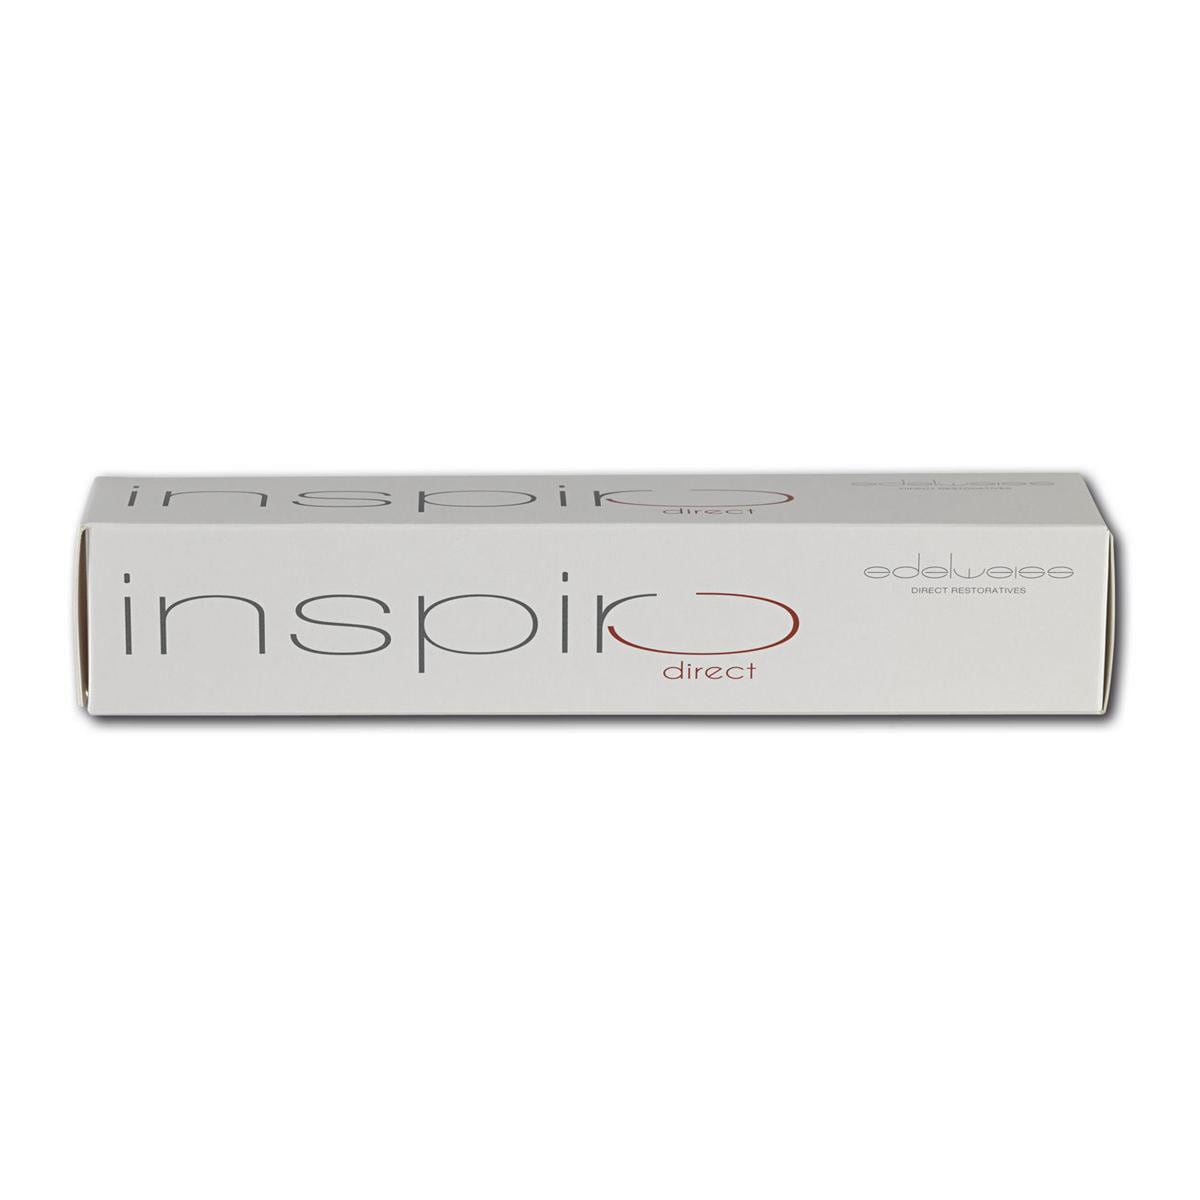 Inspiro - spuitjes - Body i1, Spuit, 3 g